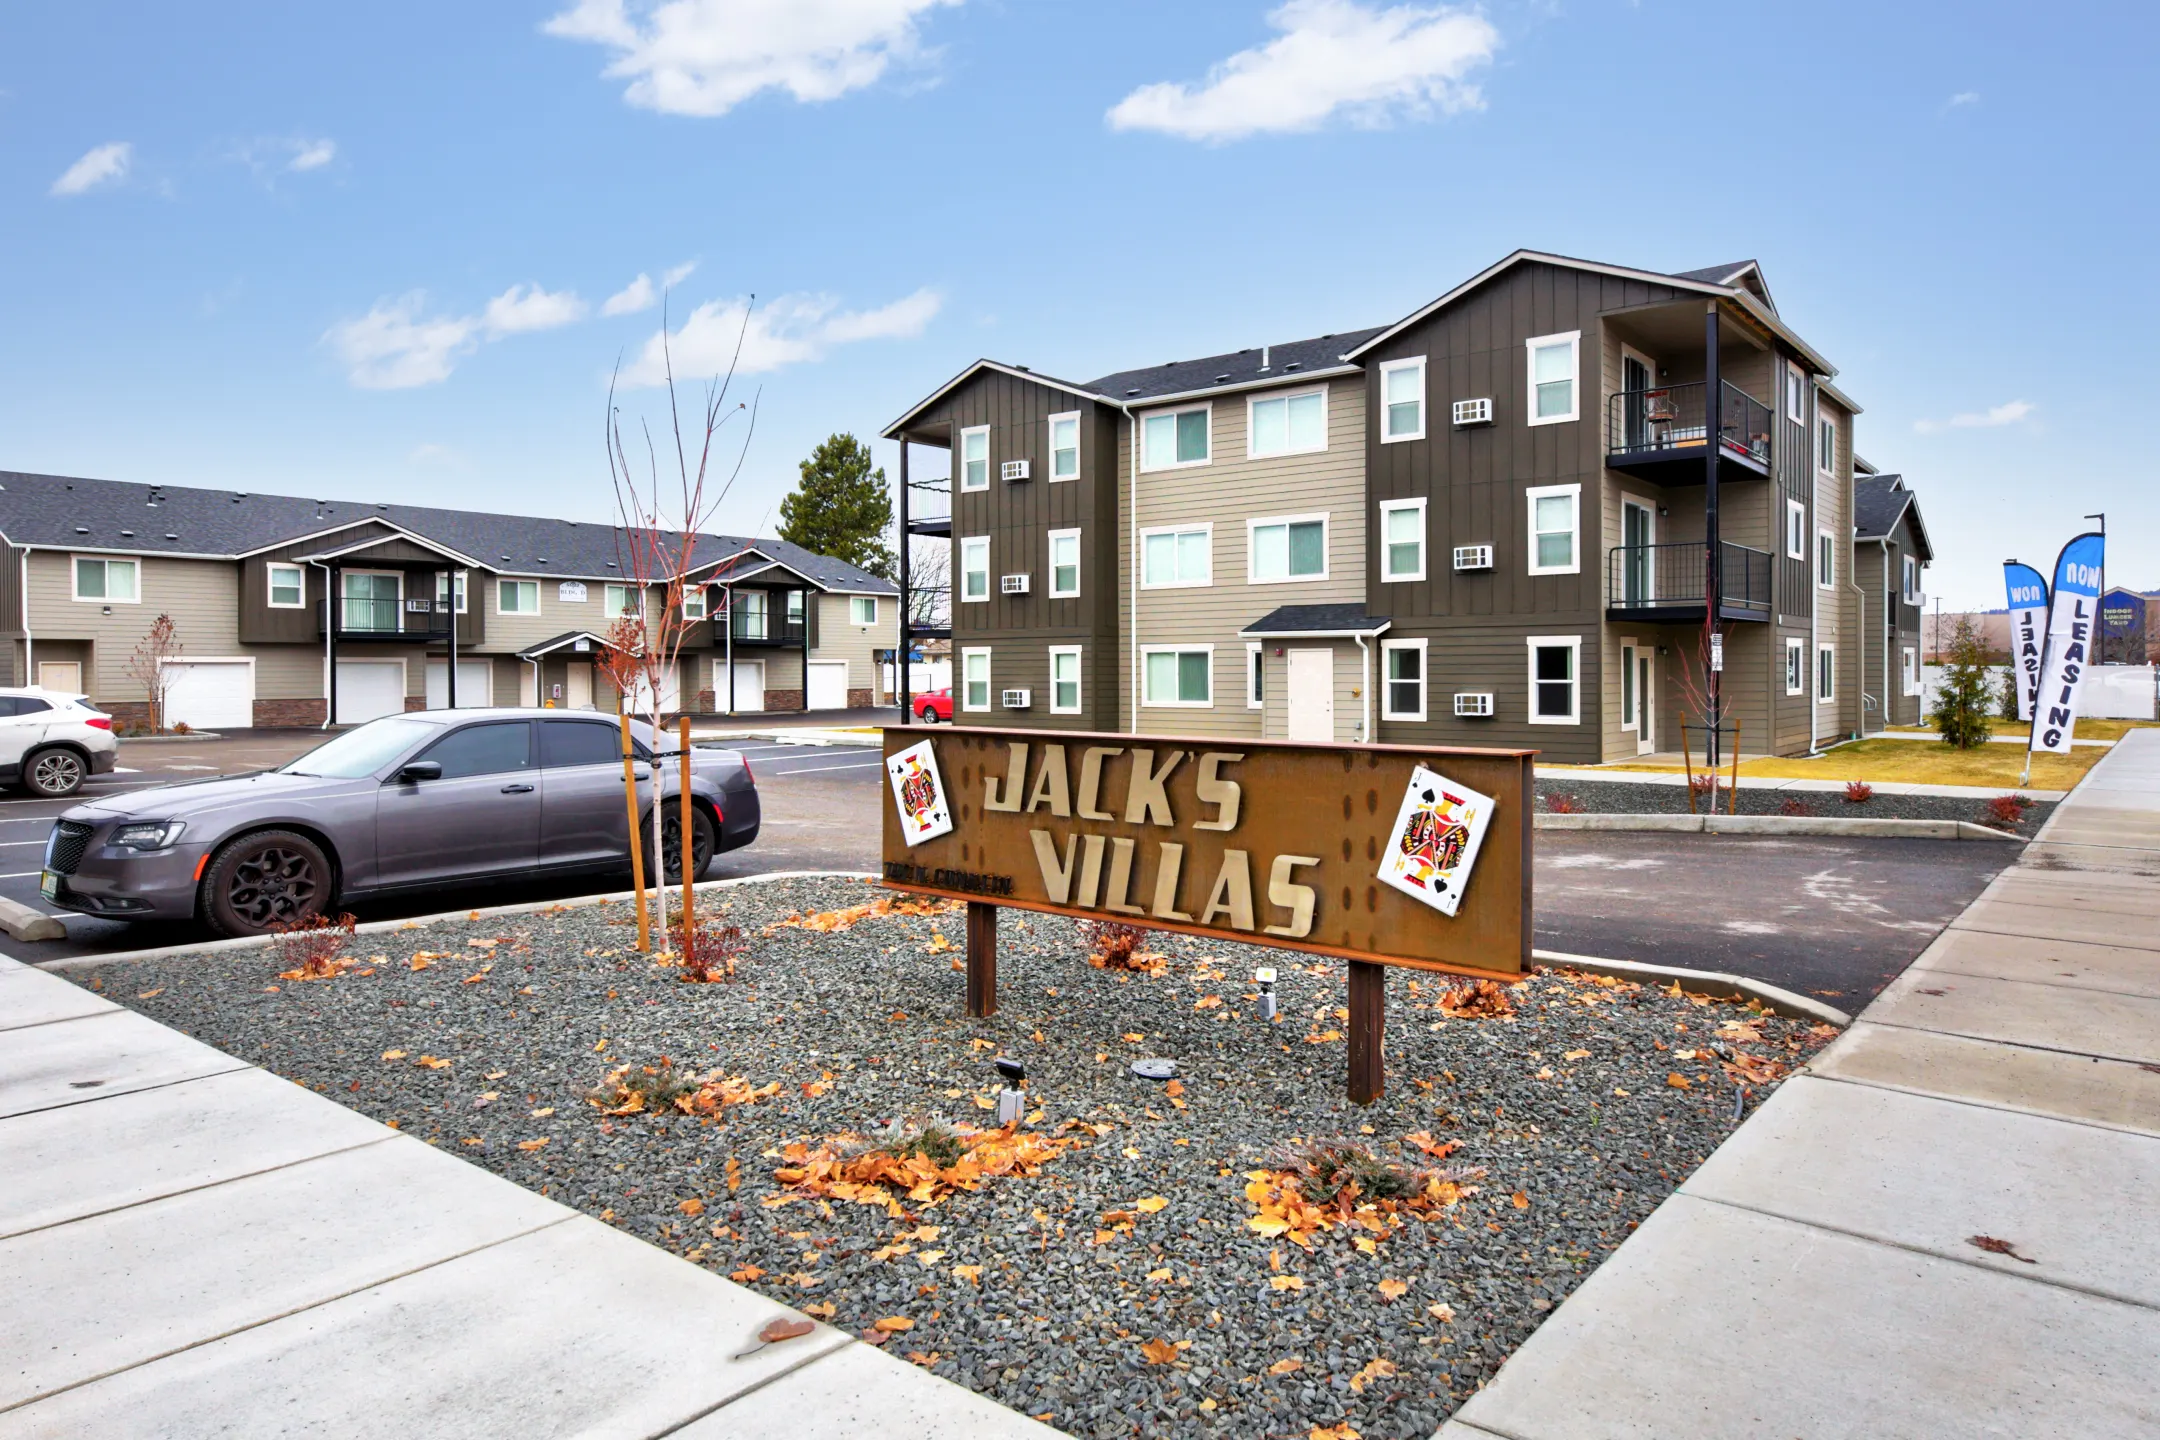 Jack's Villas - Spokane Valley, WA